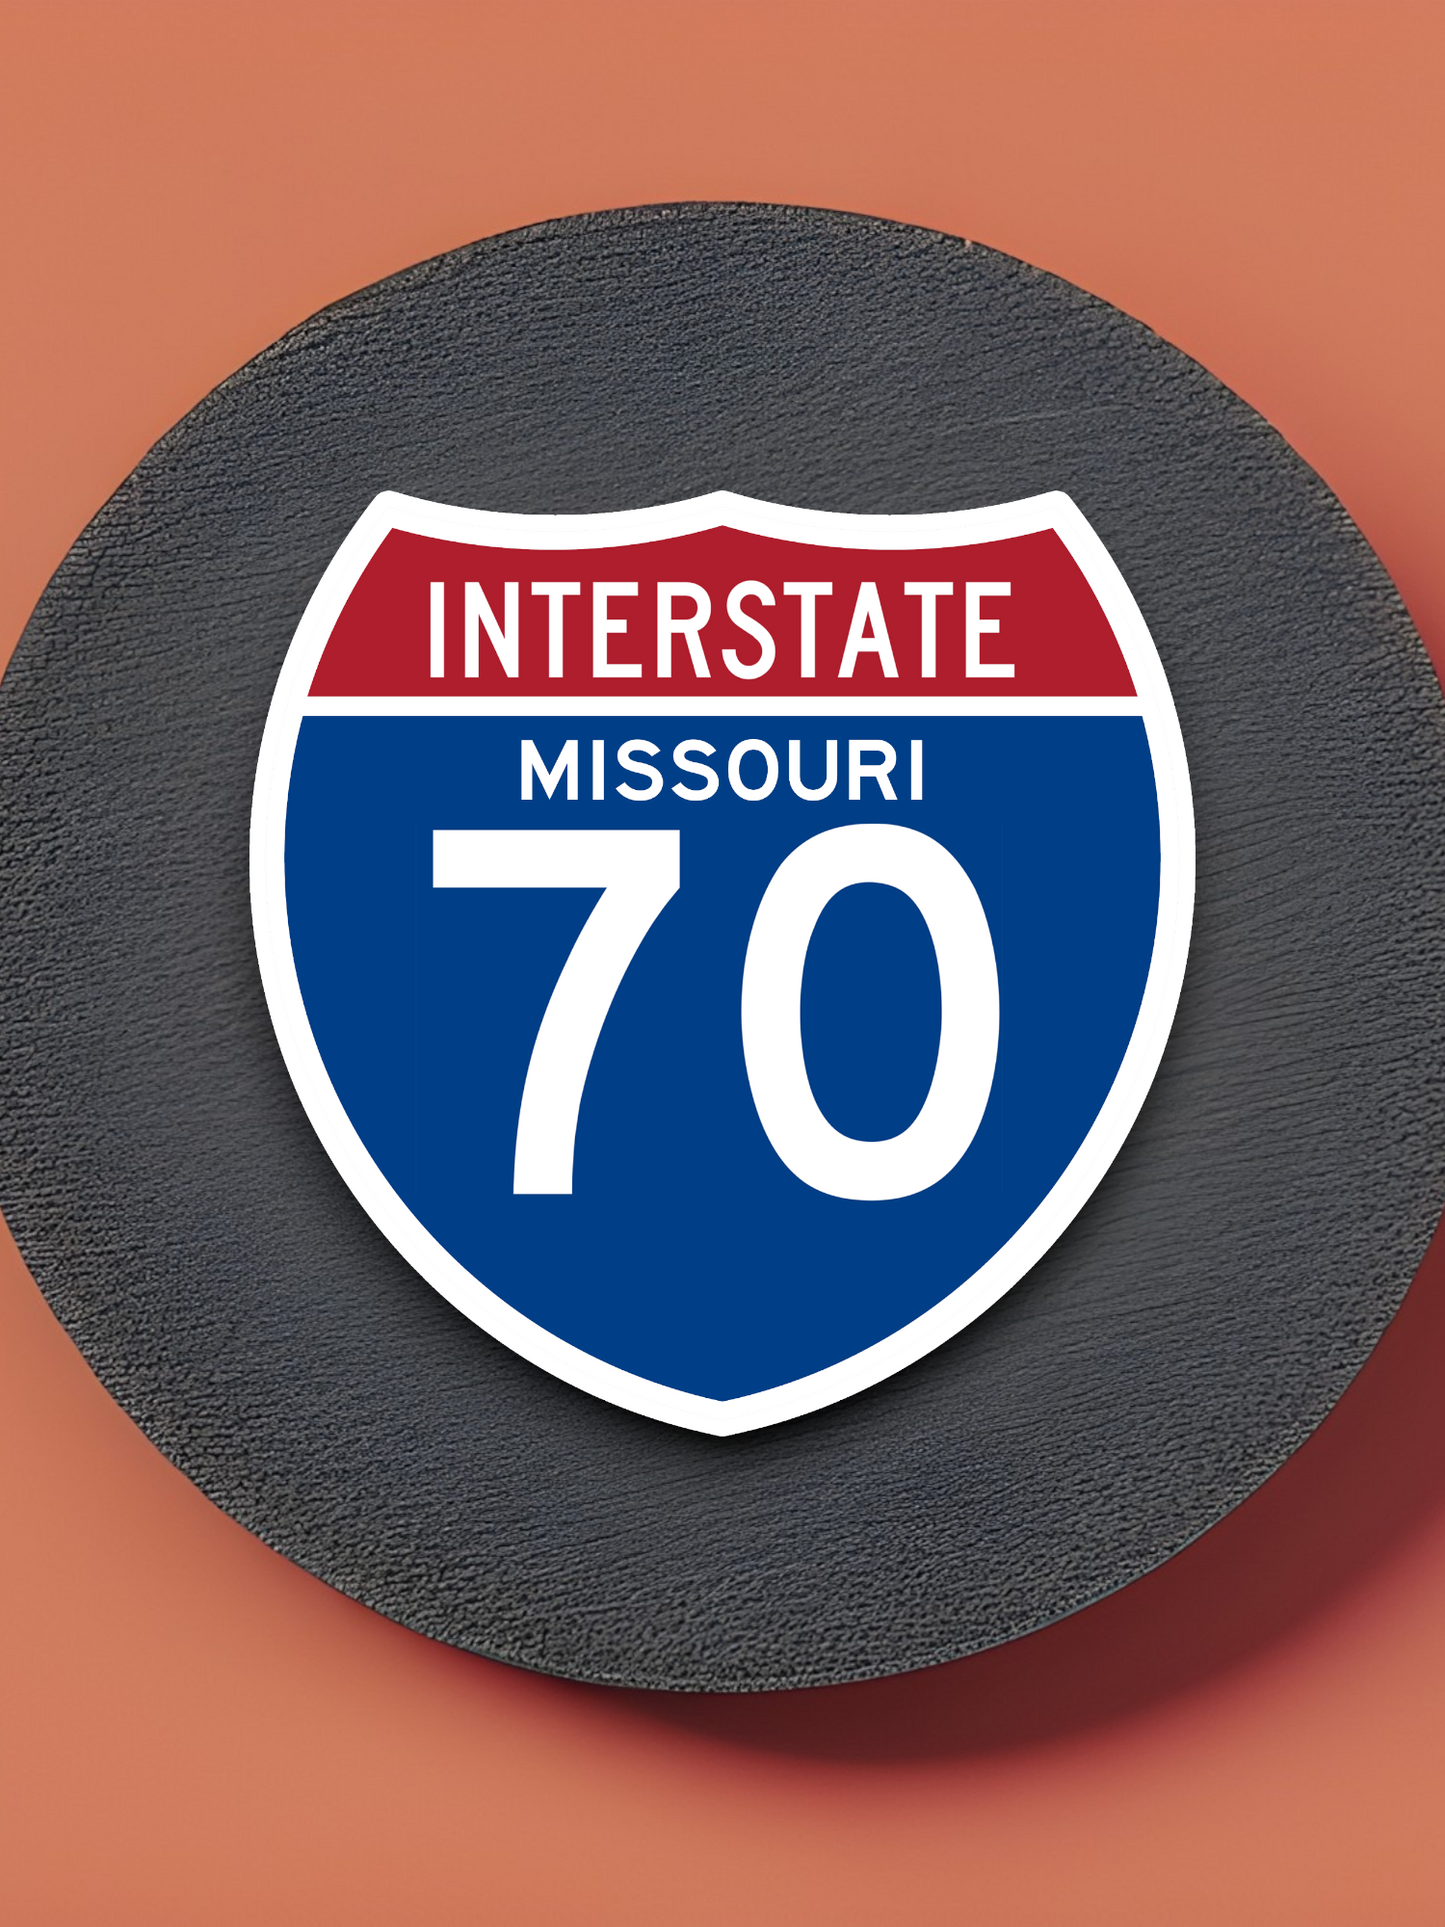 Interstate 70 - Missouri - Road Sign Sticker